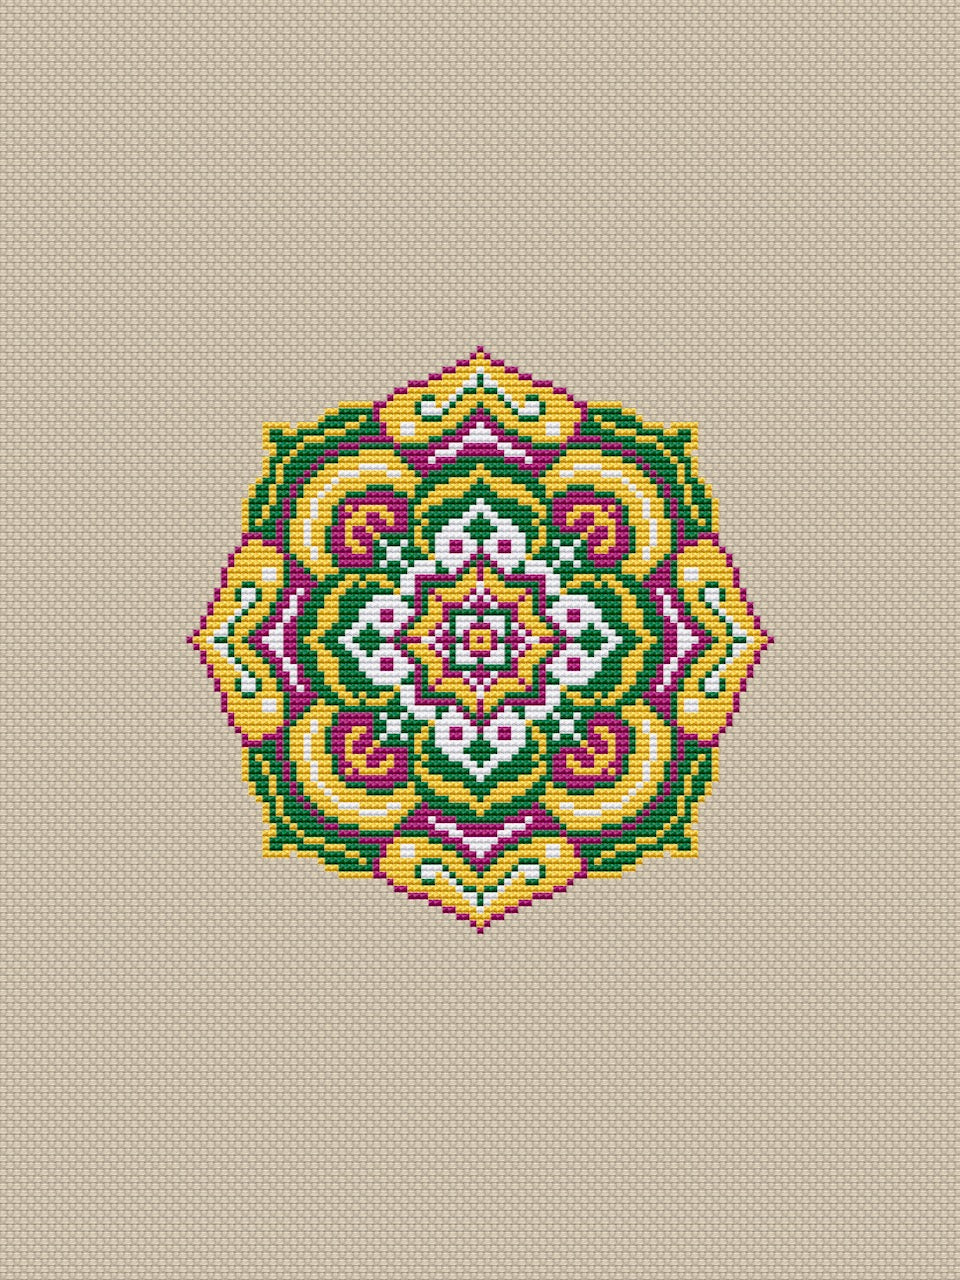 Mandala cross stitch pattern-2